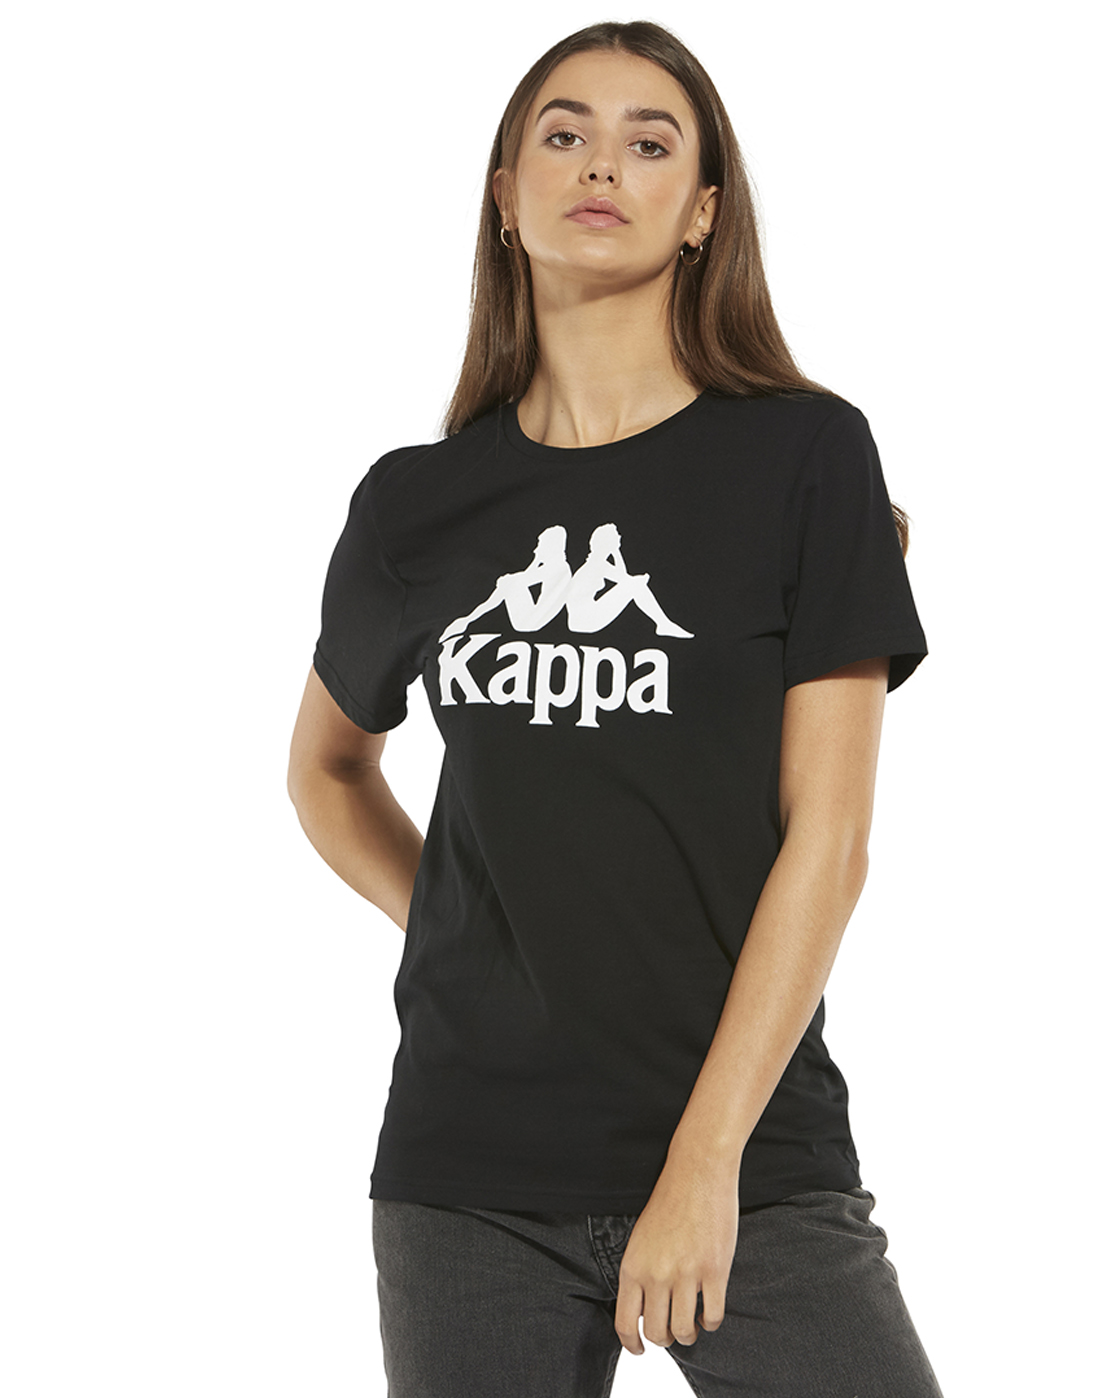 kappa t shirt for ladies